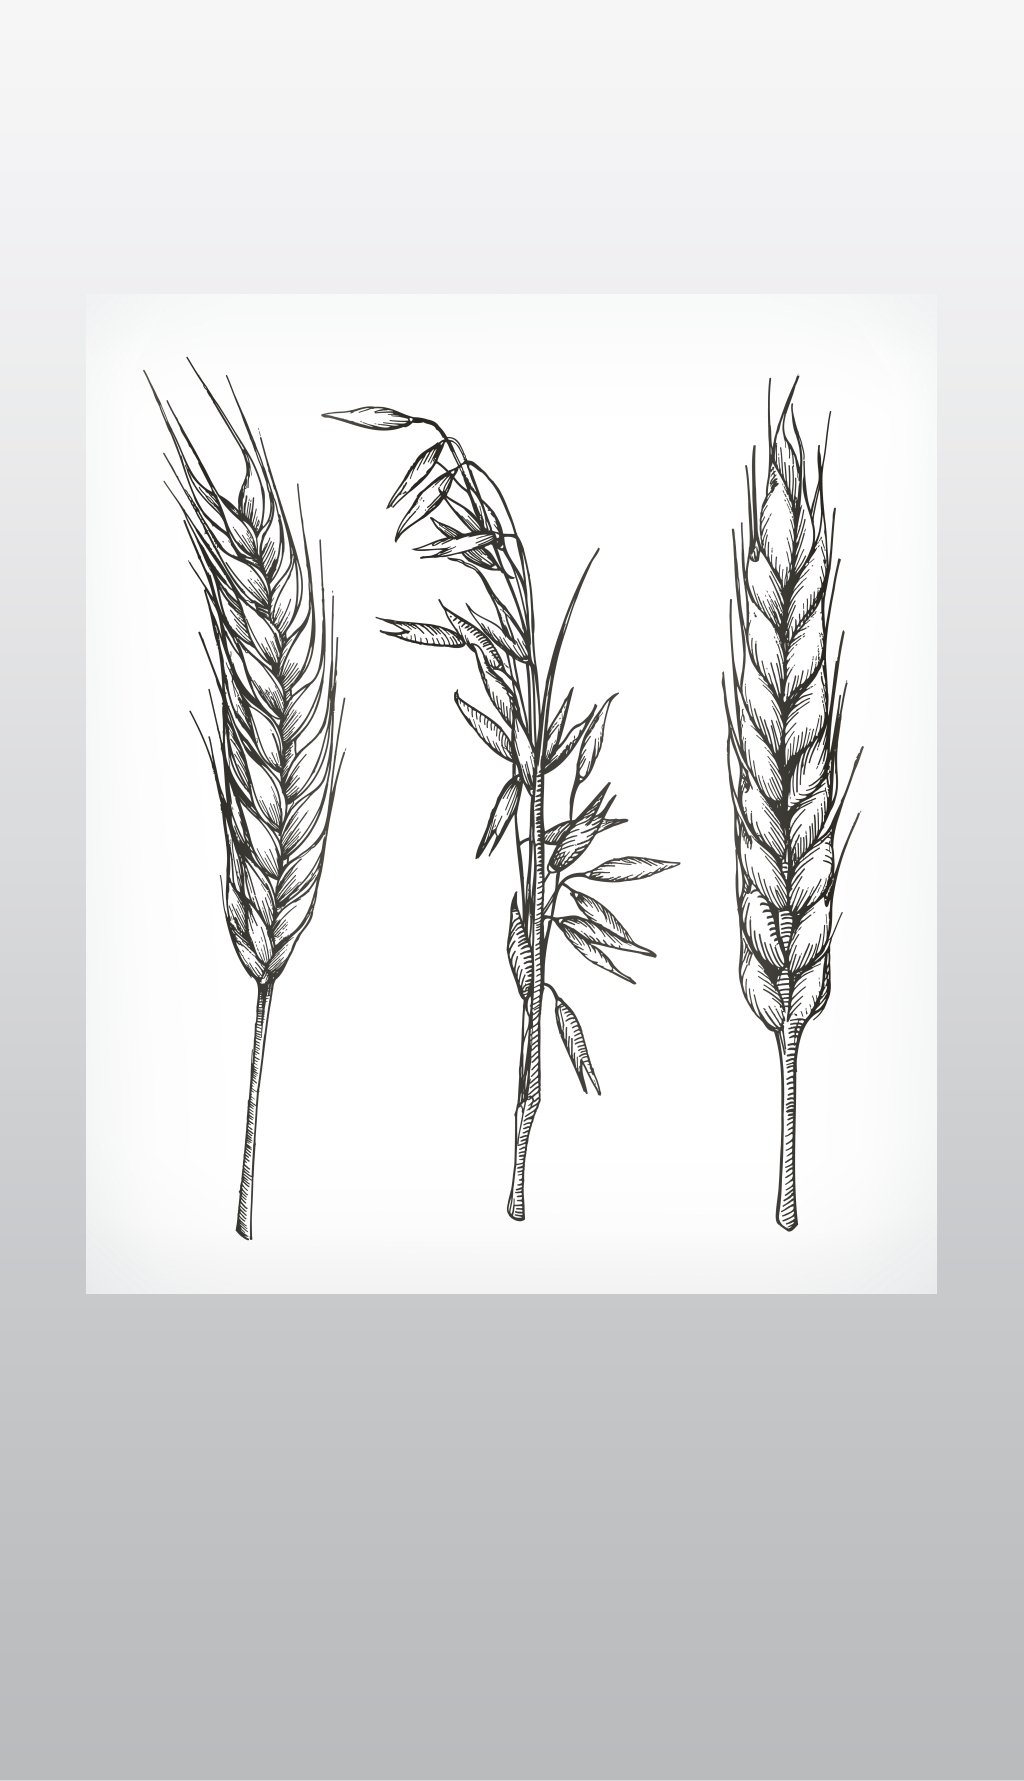 原创农作物、小麦和燕麦草图、手绘、矢量集-版权可商用